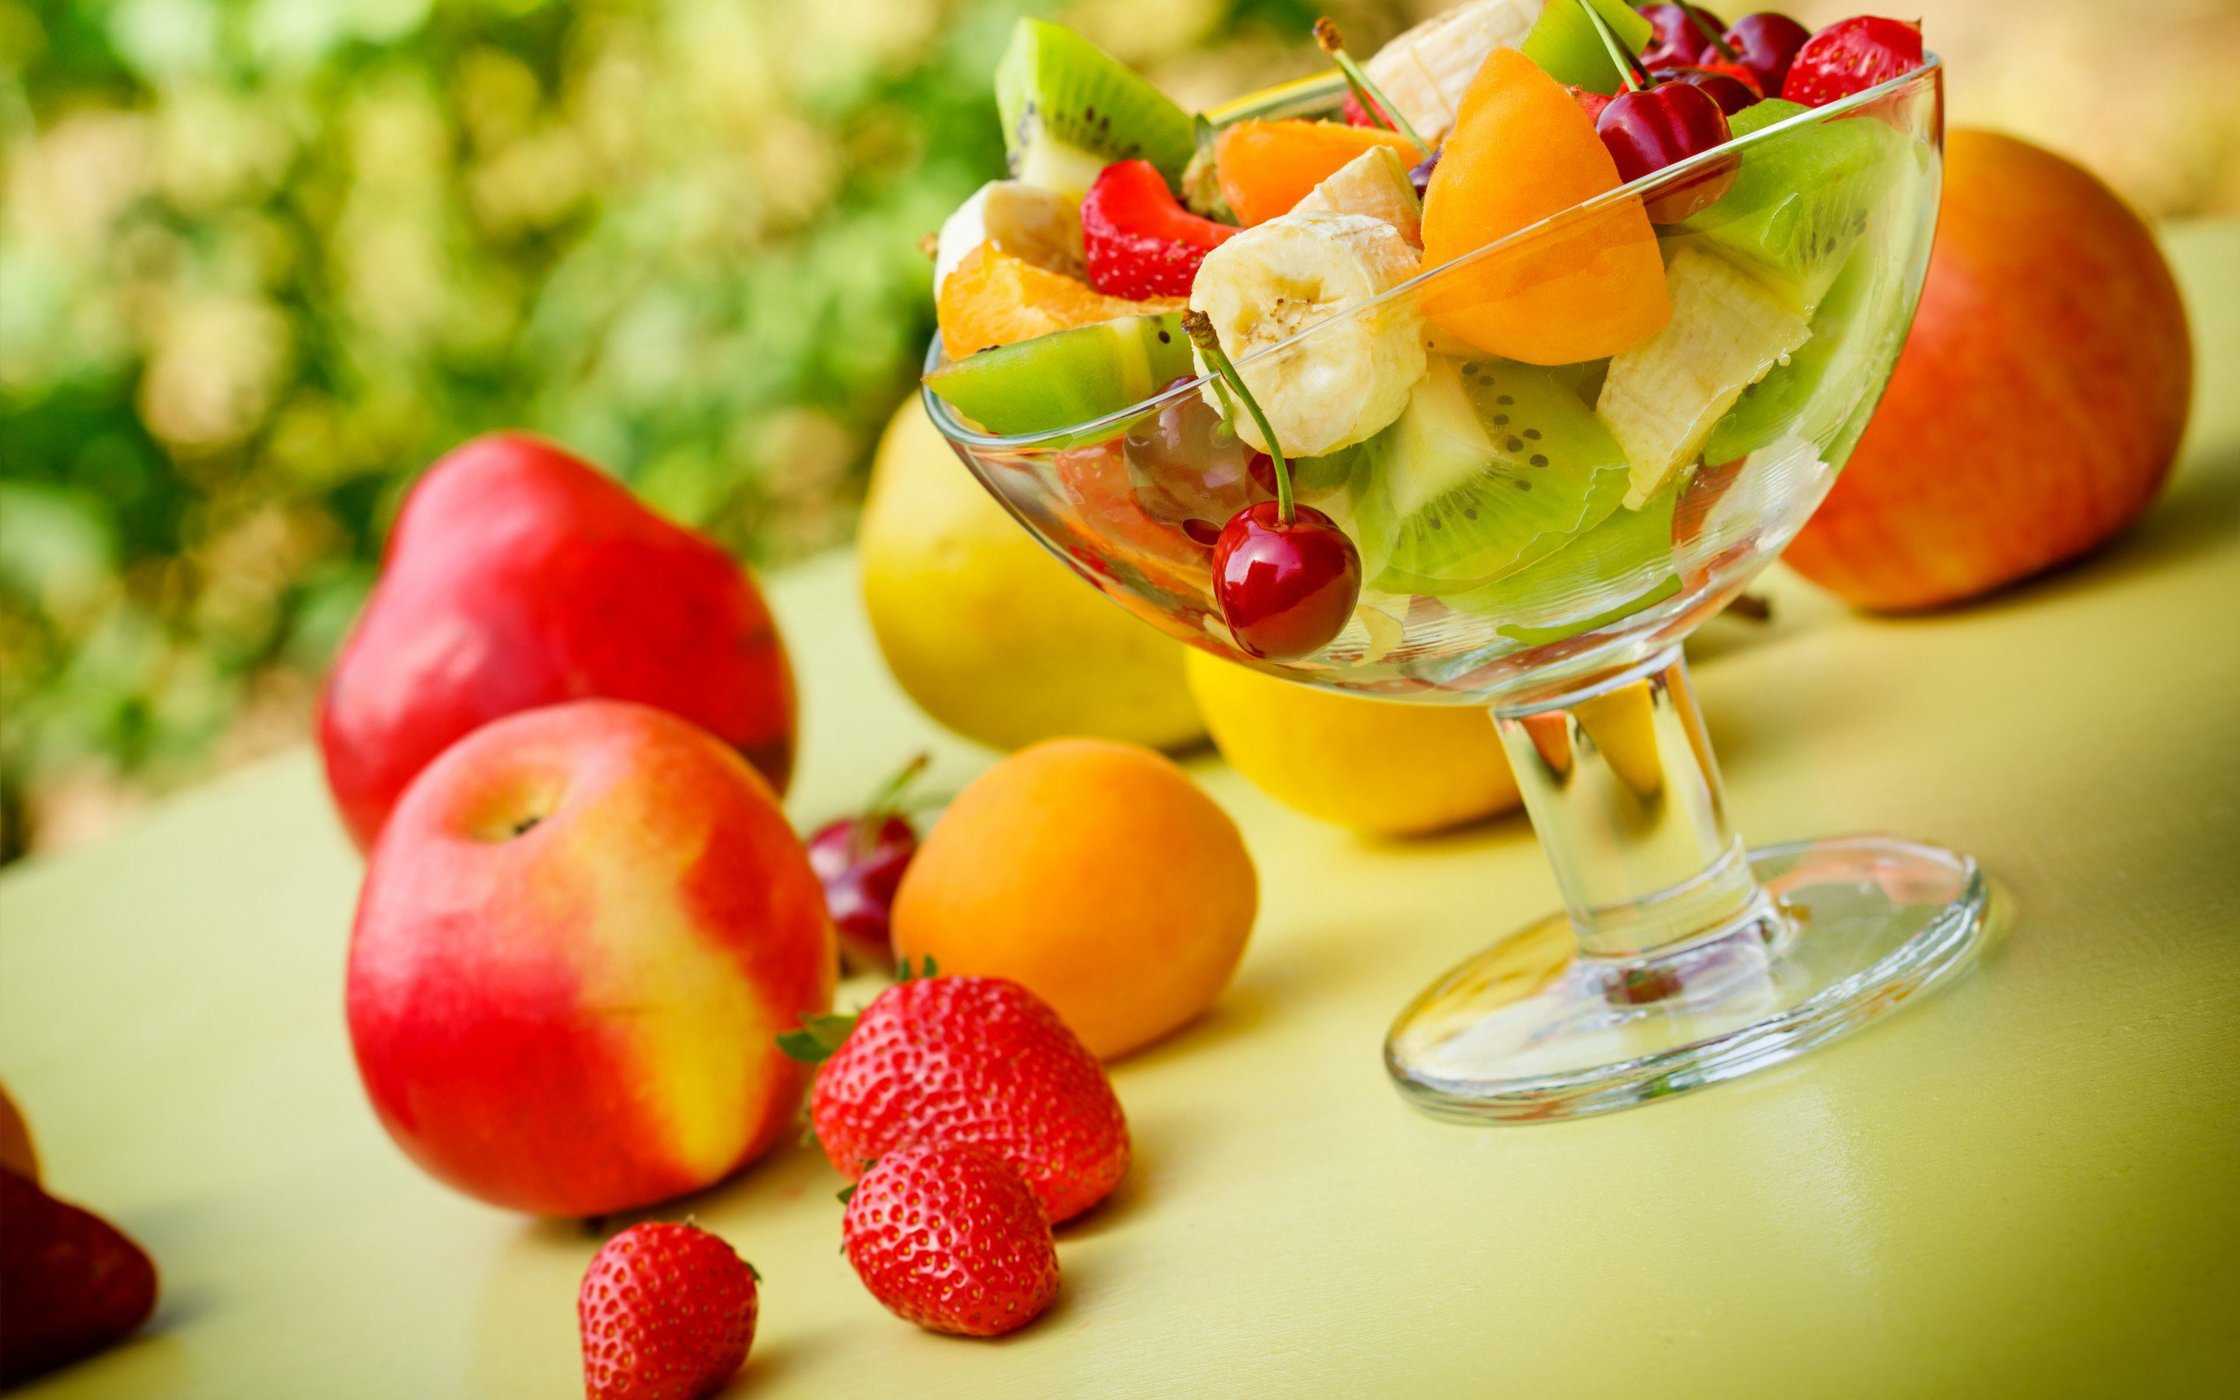 Il consumo di frutta dovrebbe essere prima o dopo aver mangiato?